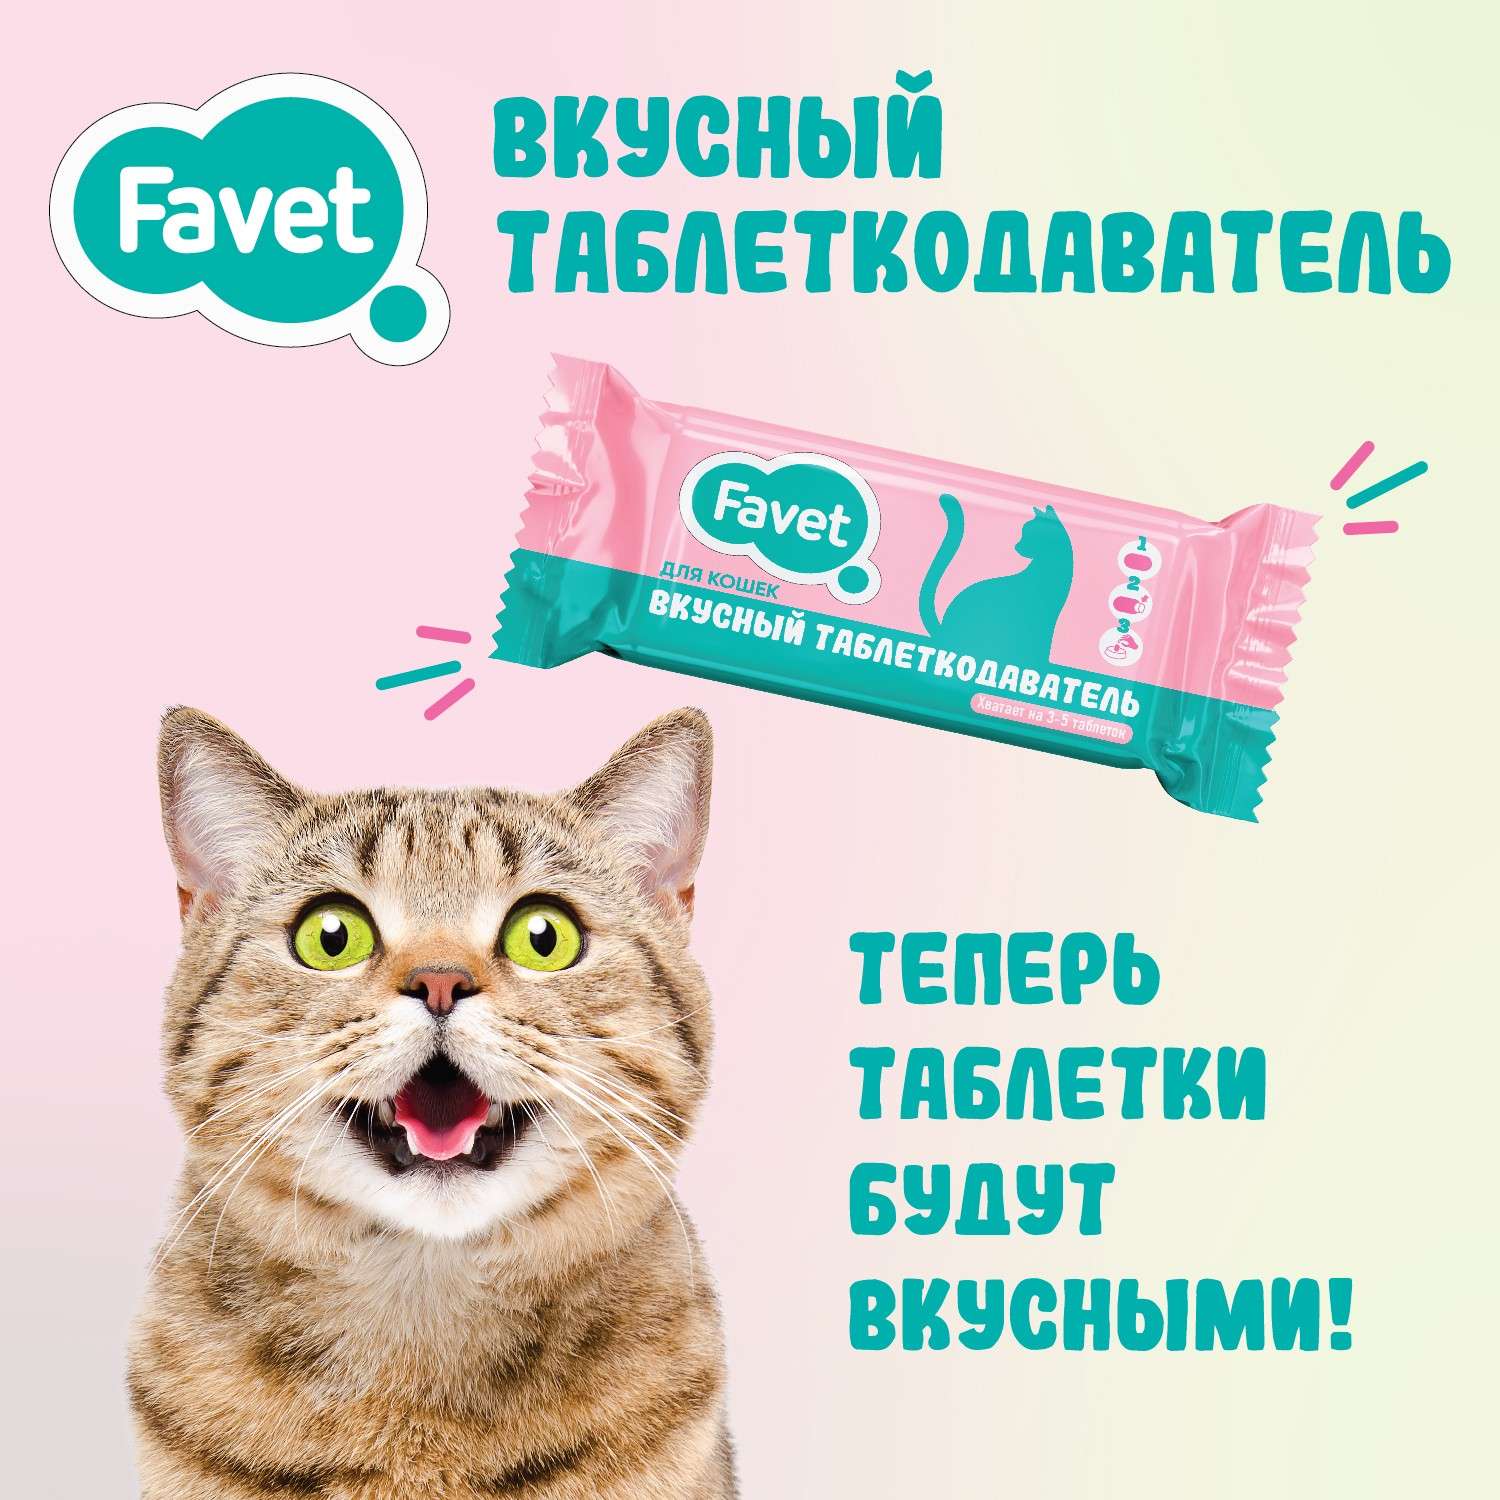 Таблеткодаватель для кошек Favet Вкусный 1 шт - фото 2